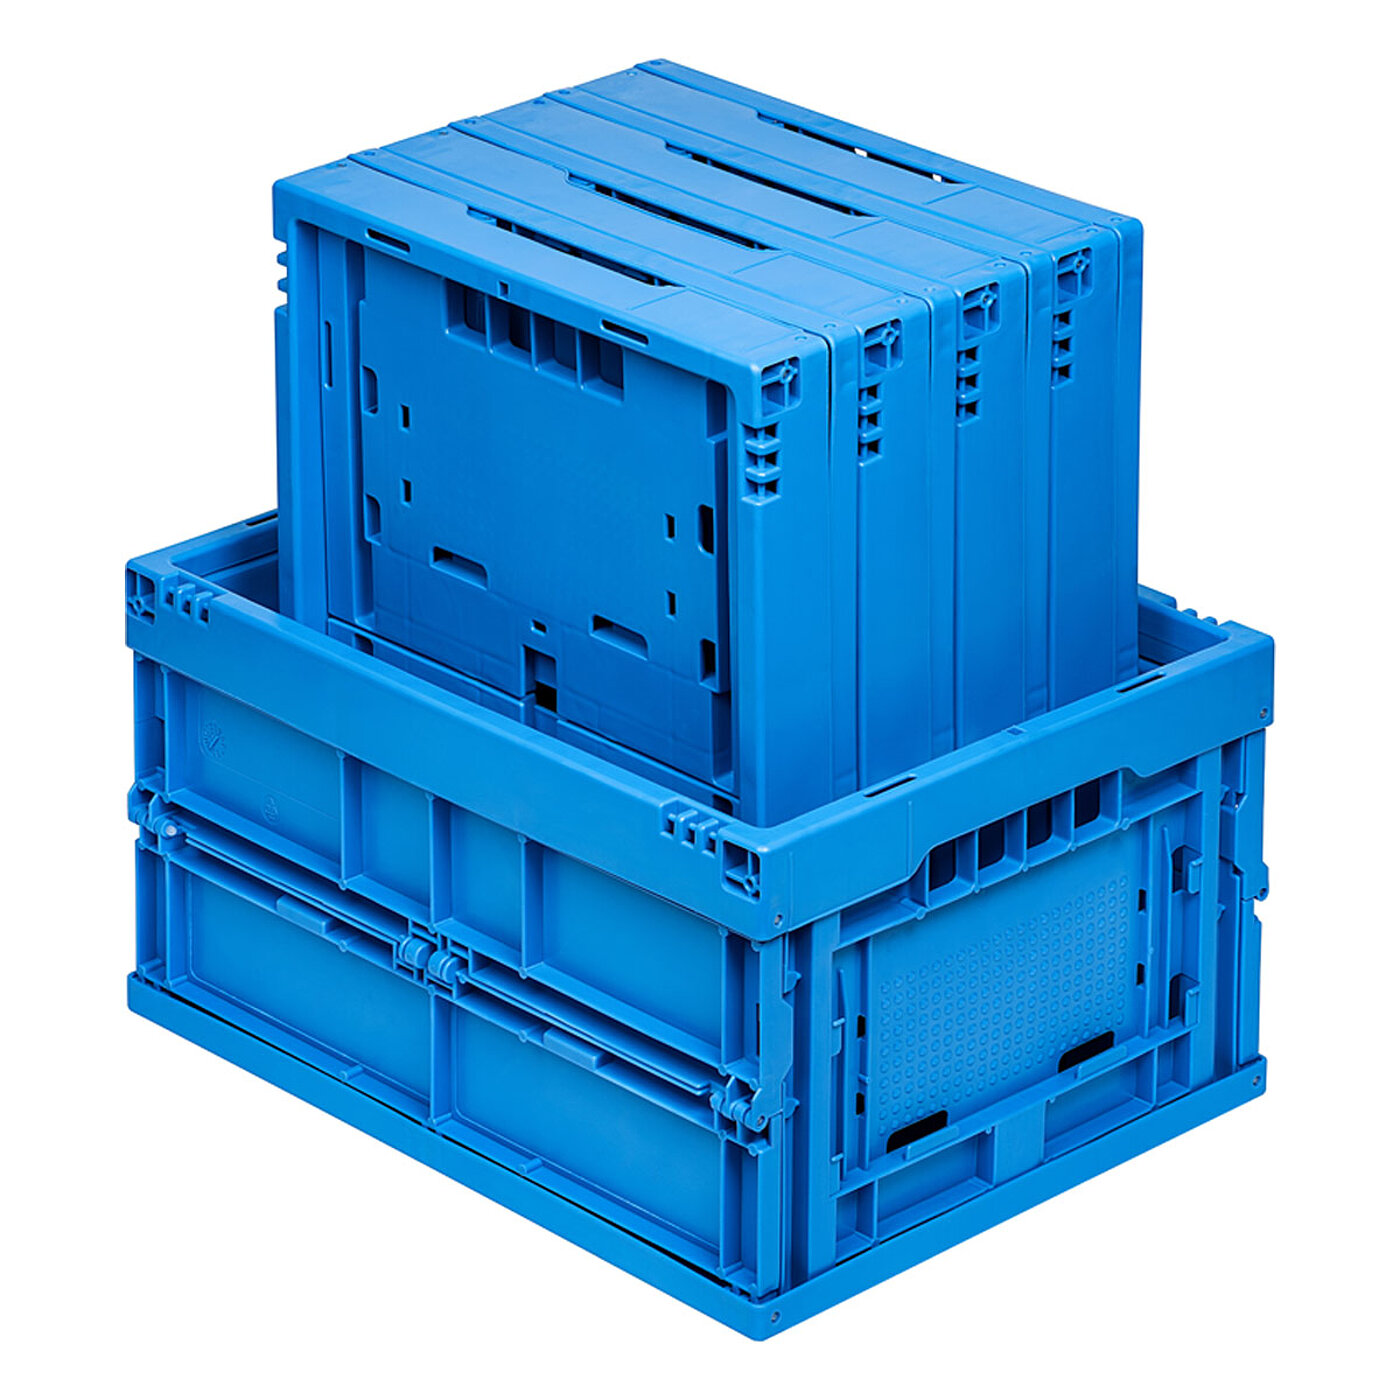 eine blaue Faltbox aus Kunststoff in Schrägansicht, in der vier zusammengeklappte blaue Faltboxen hochkant stehen, freigestellt auf weißem Hintergrund